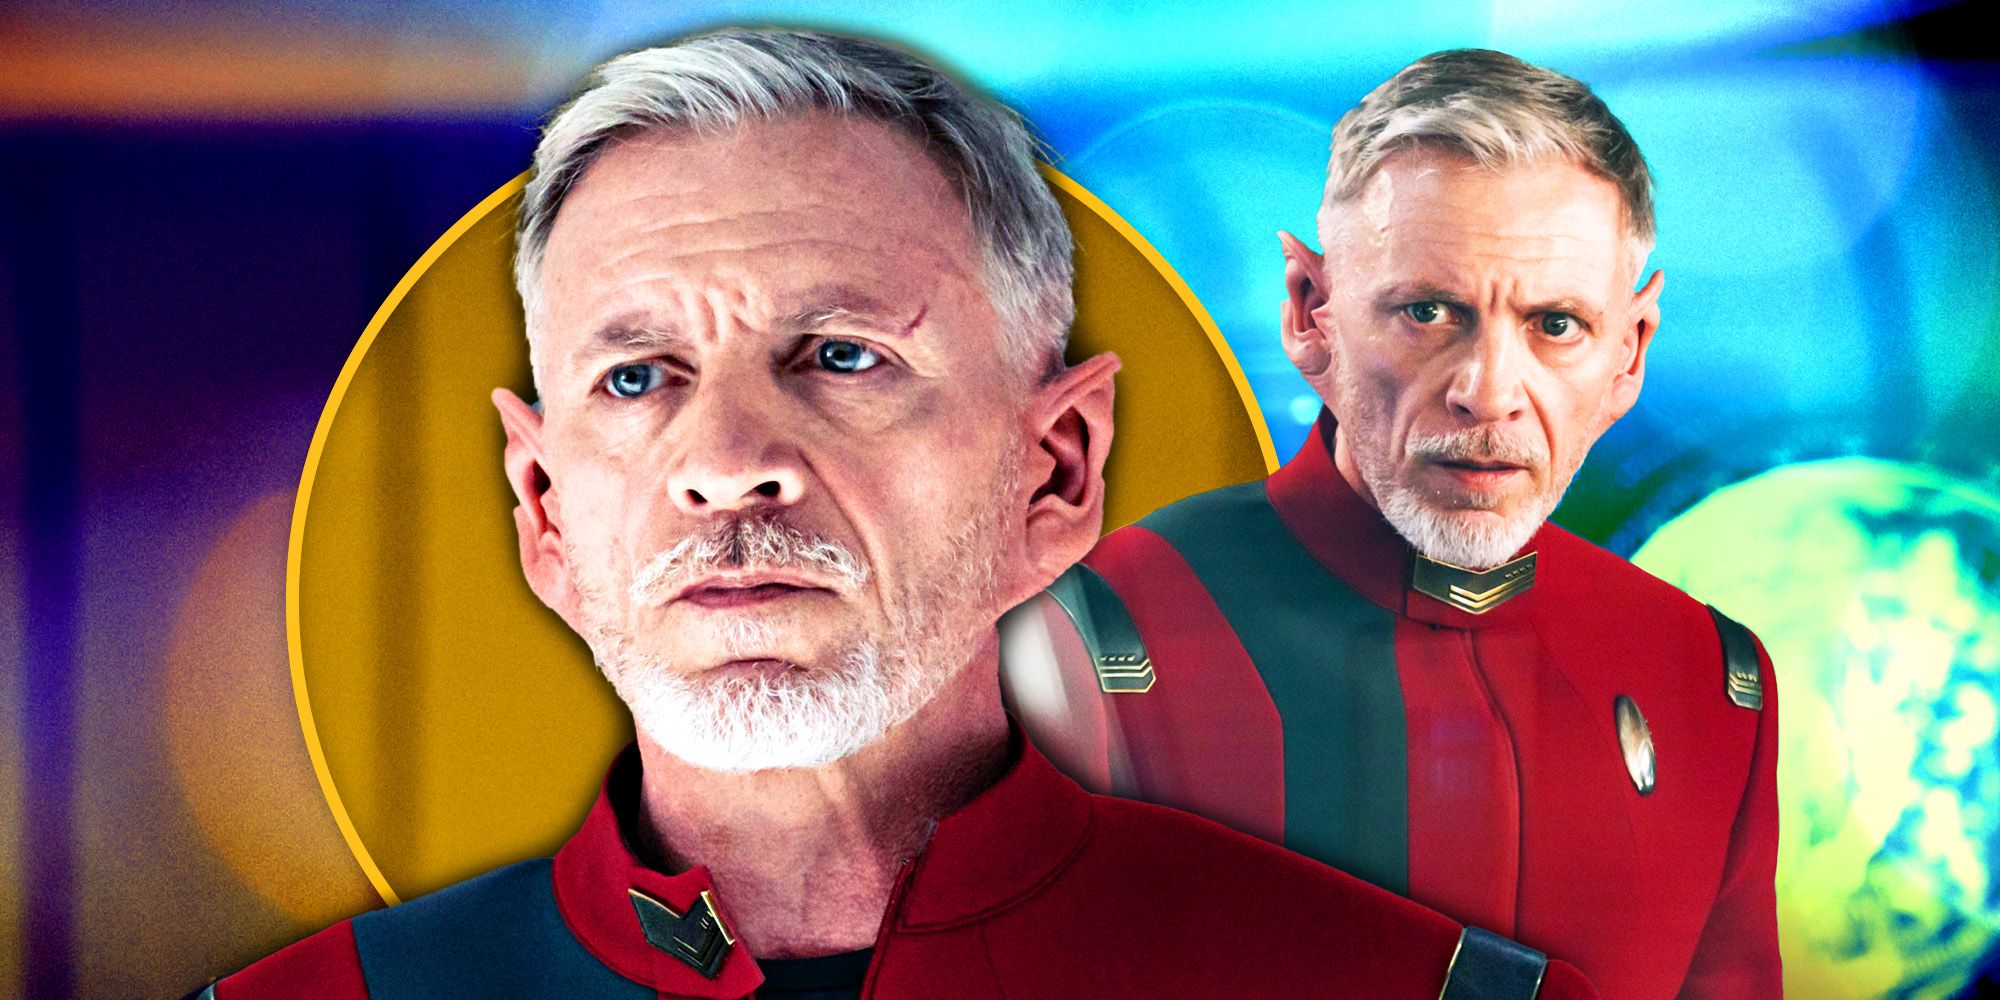 Callum Keith Rennie de Star Trek: Discovery Season 5 sobre el desafío del capitán Rayner a la autoridad de Burnham